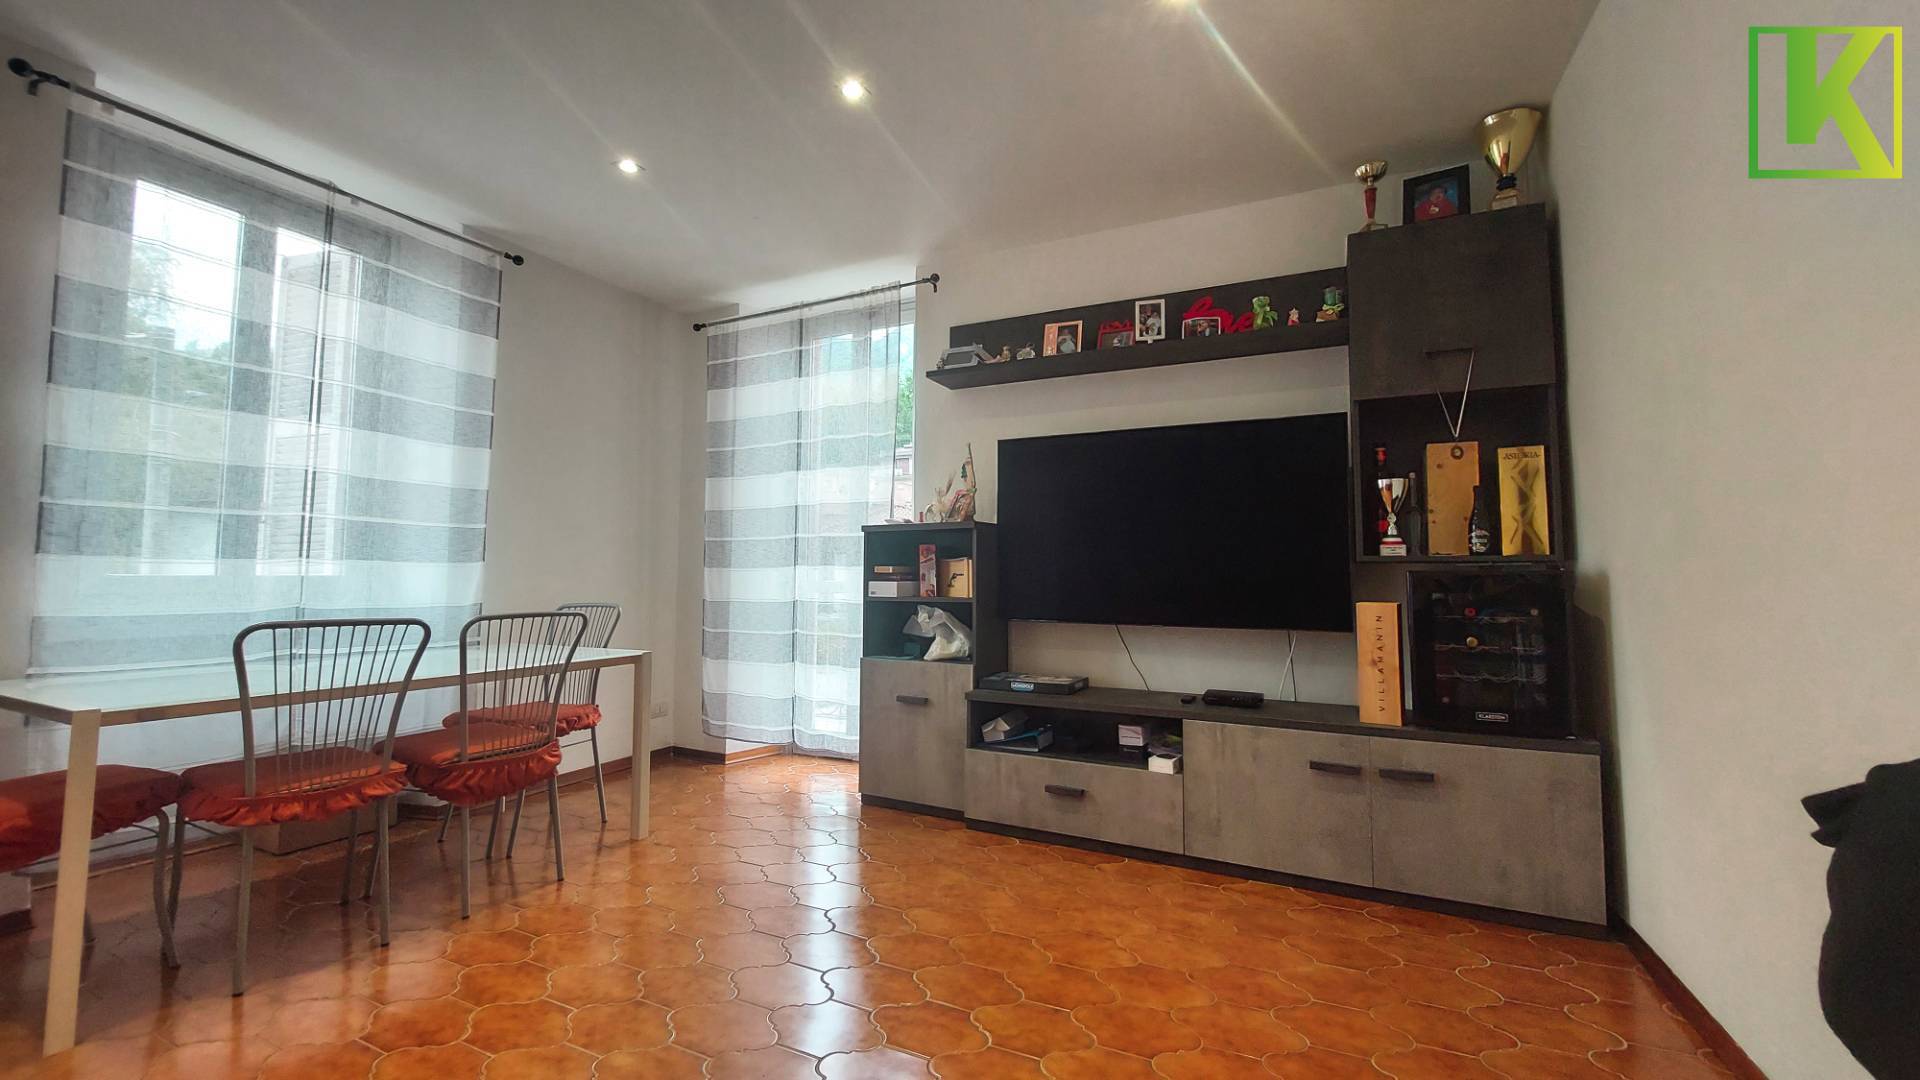 Appartamento in vendita a Mesenzana, 3 locali, prezzo € 155.000 | PortaleAgenzieImmobiliari.it